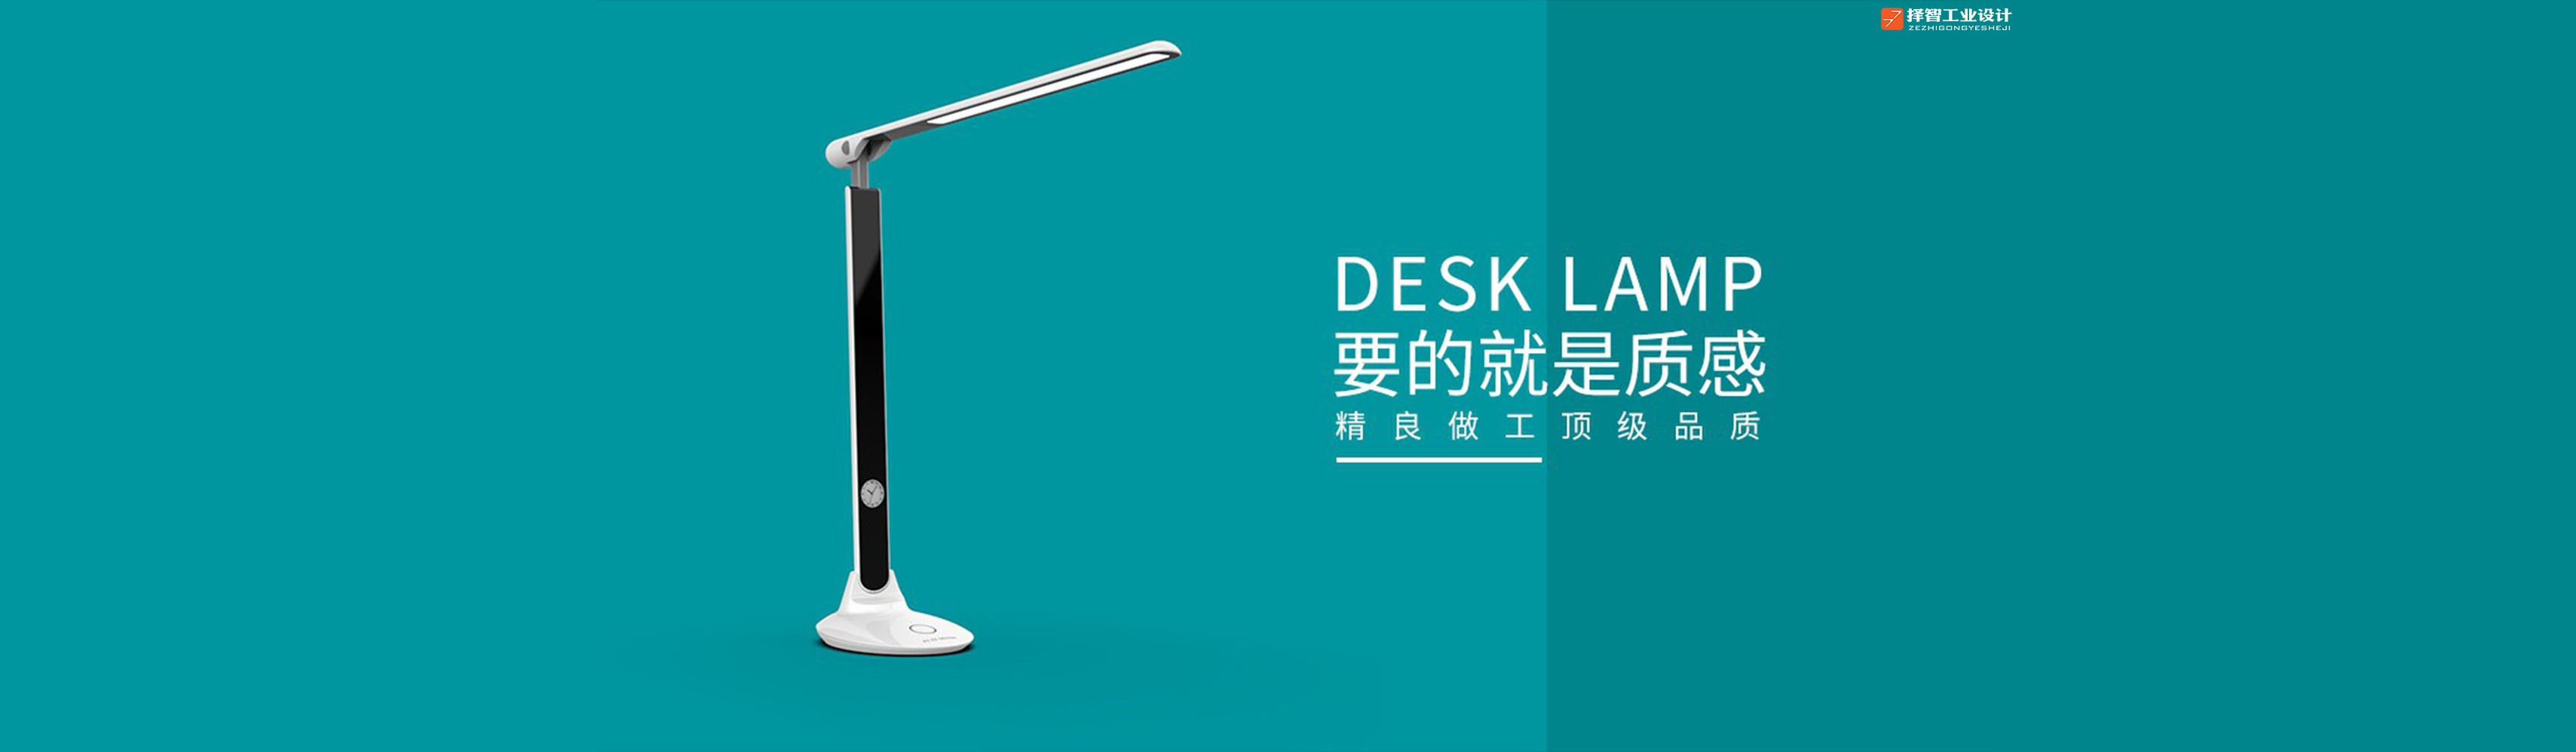 上海苏州产品设计 工业产品外观设计 结构设计 台灯结构产品设计